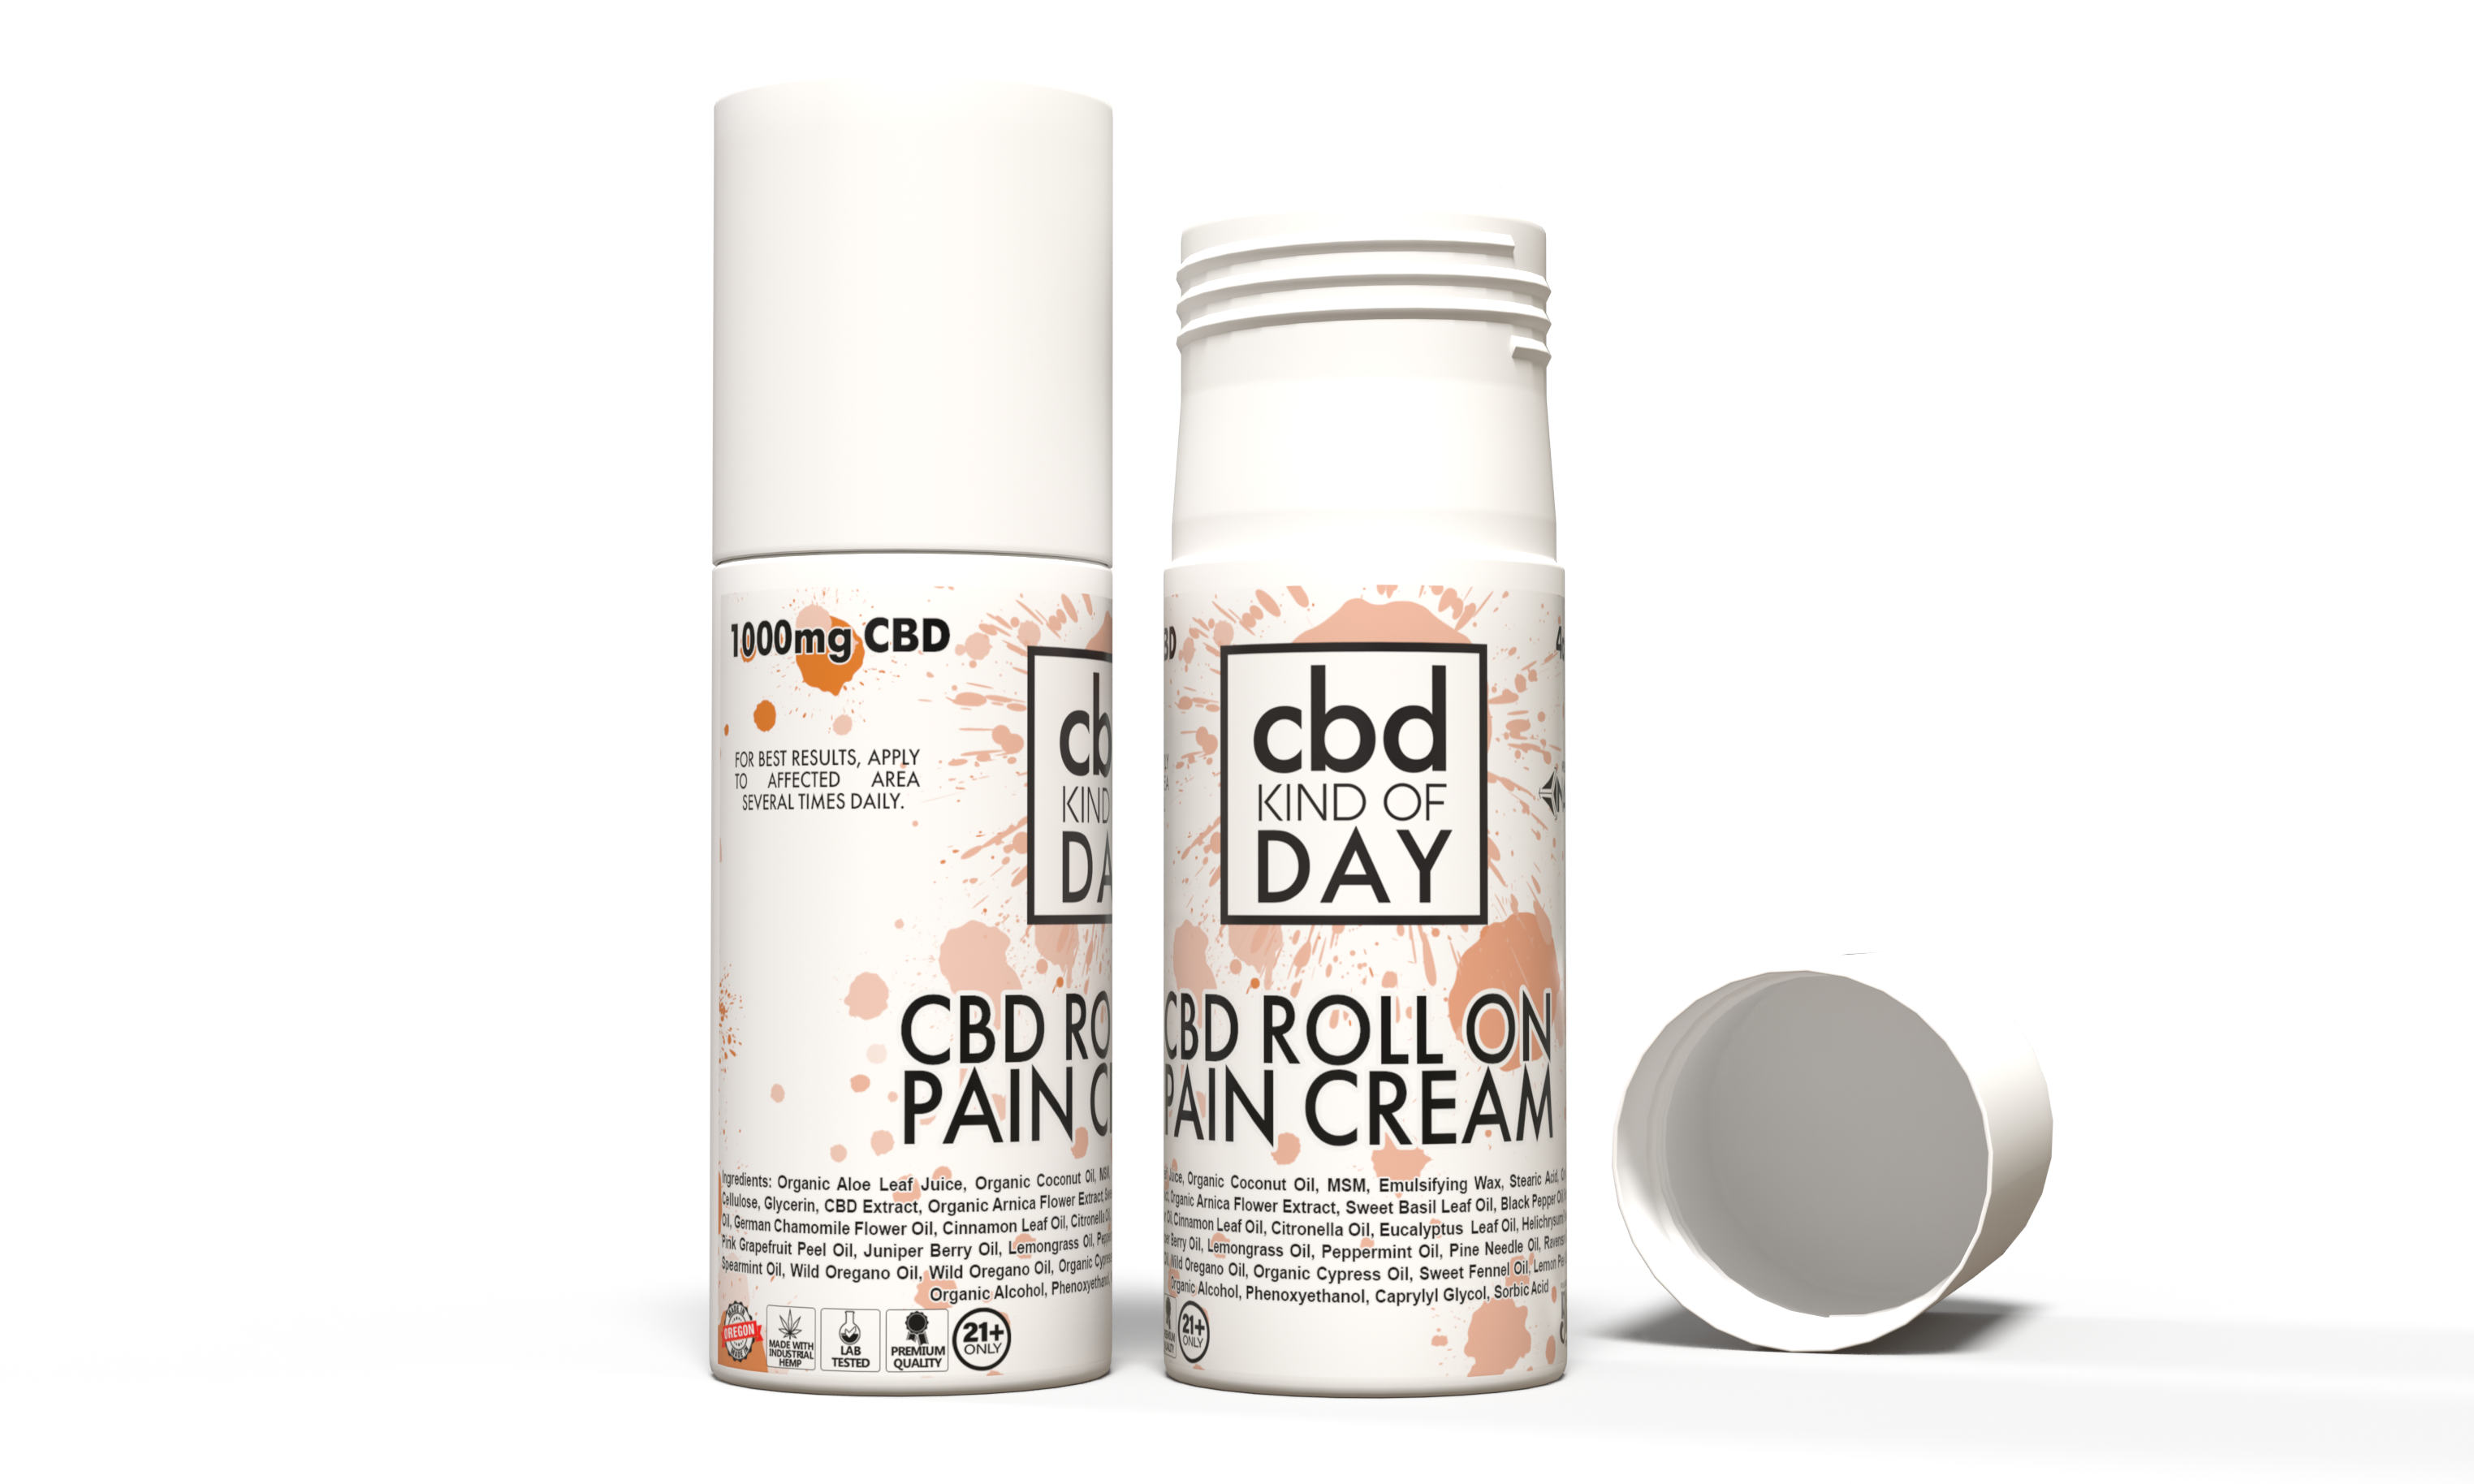 Roll-on Pain Cream